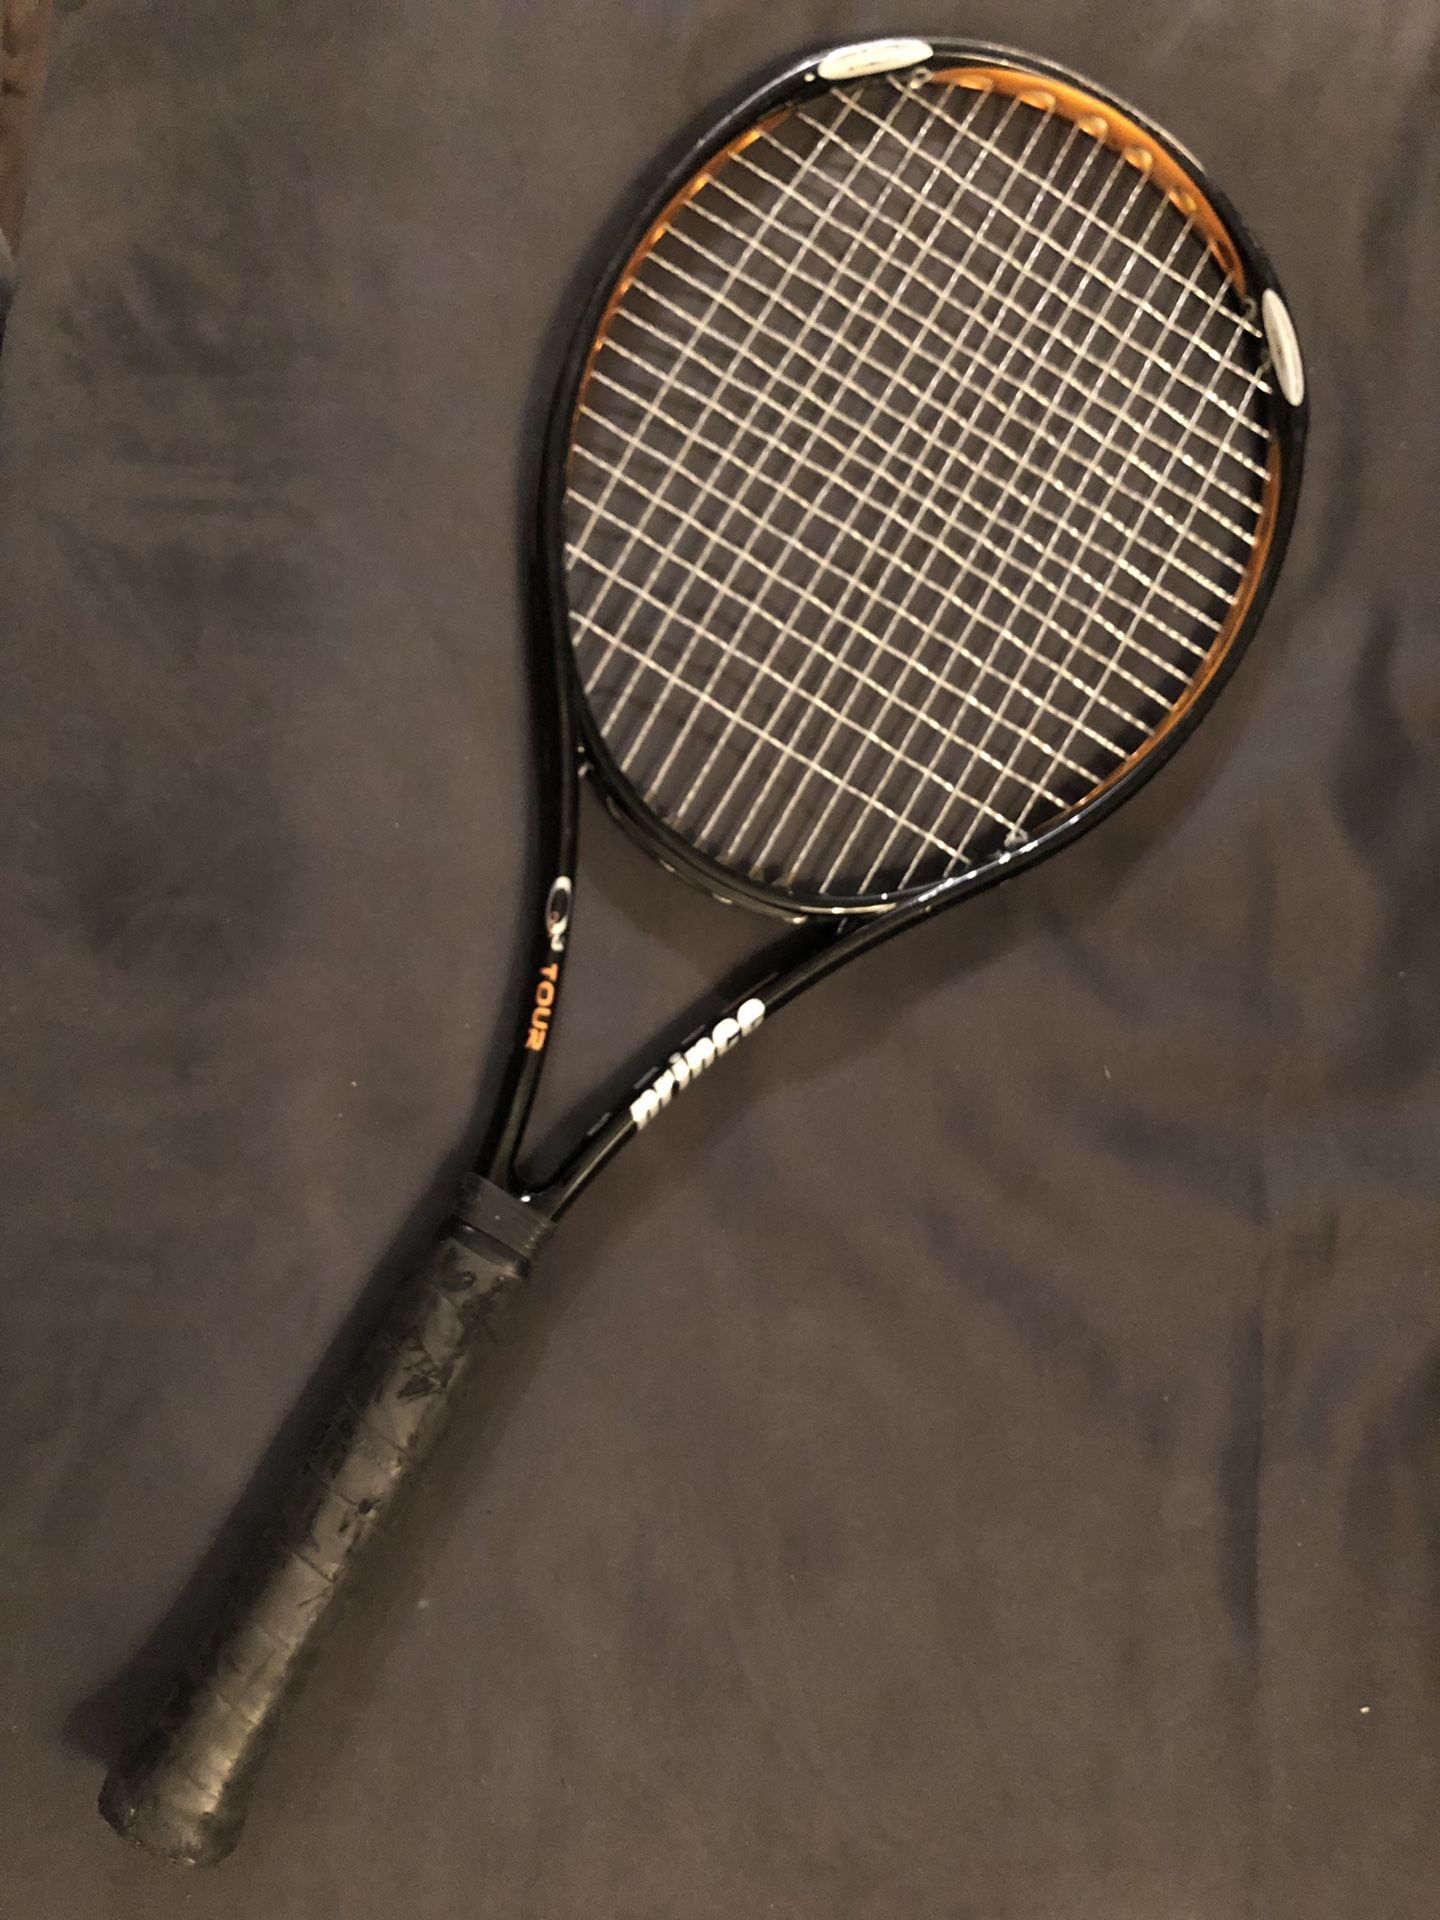 Prince tennis racket, excellent condition, Q3 tour